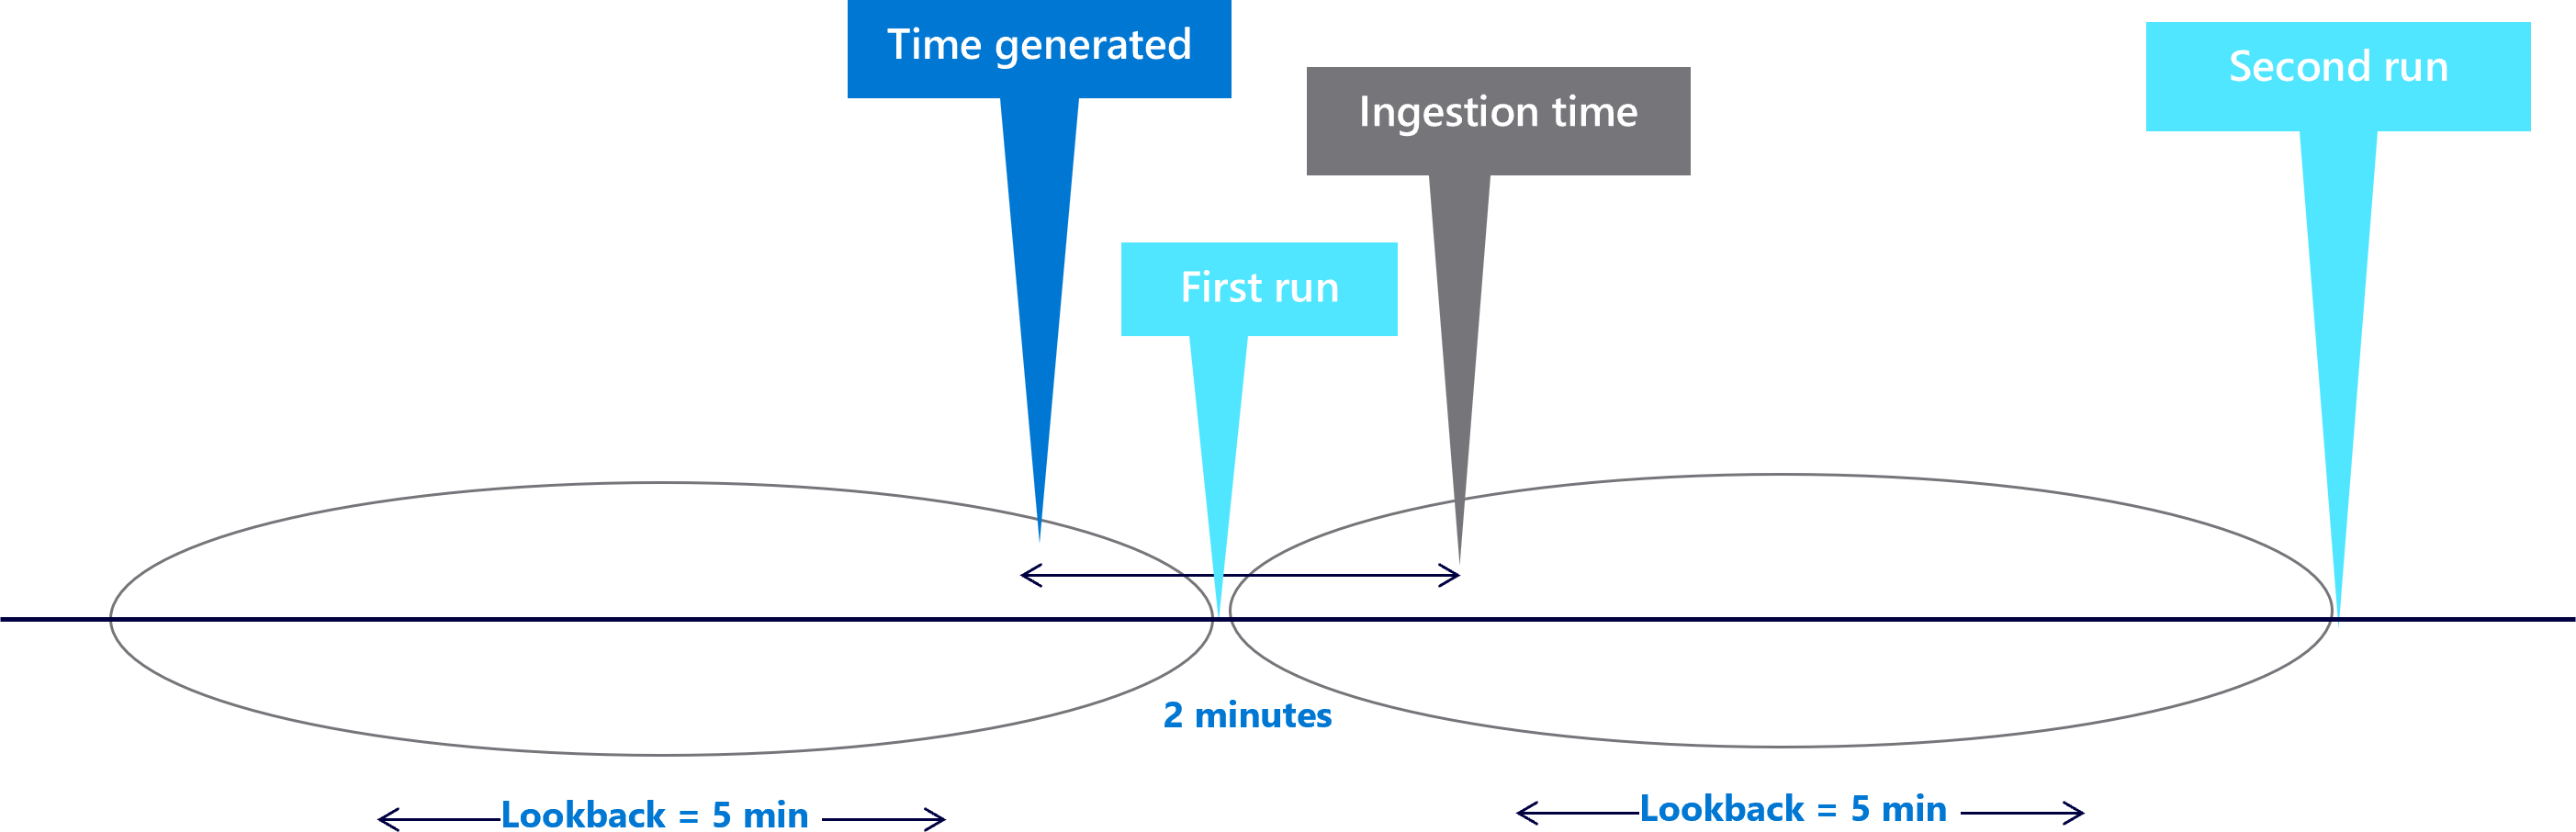 Diagramme montrant des fenêtres de rétrospection de cinq minutes avec un délai de deux minutes.